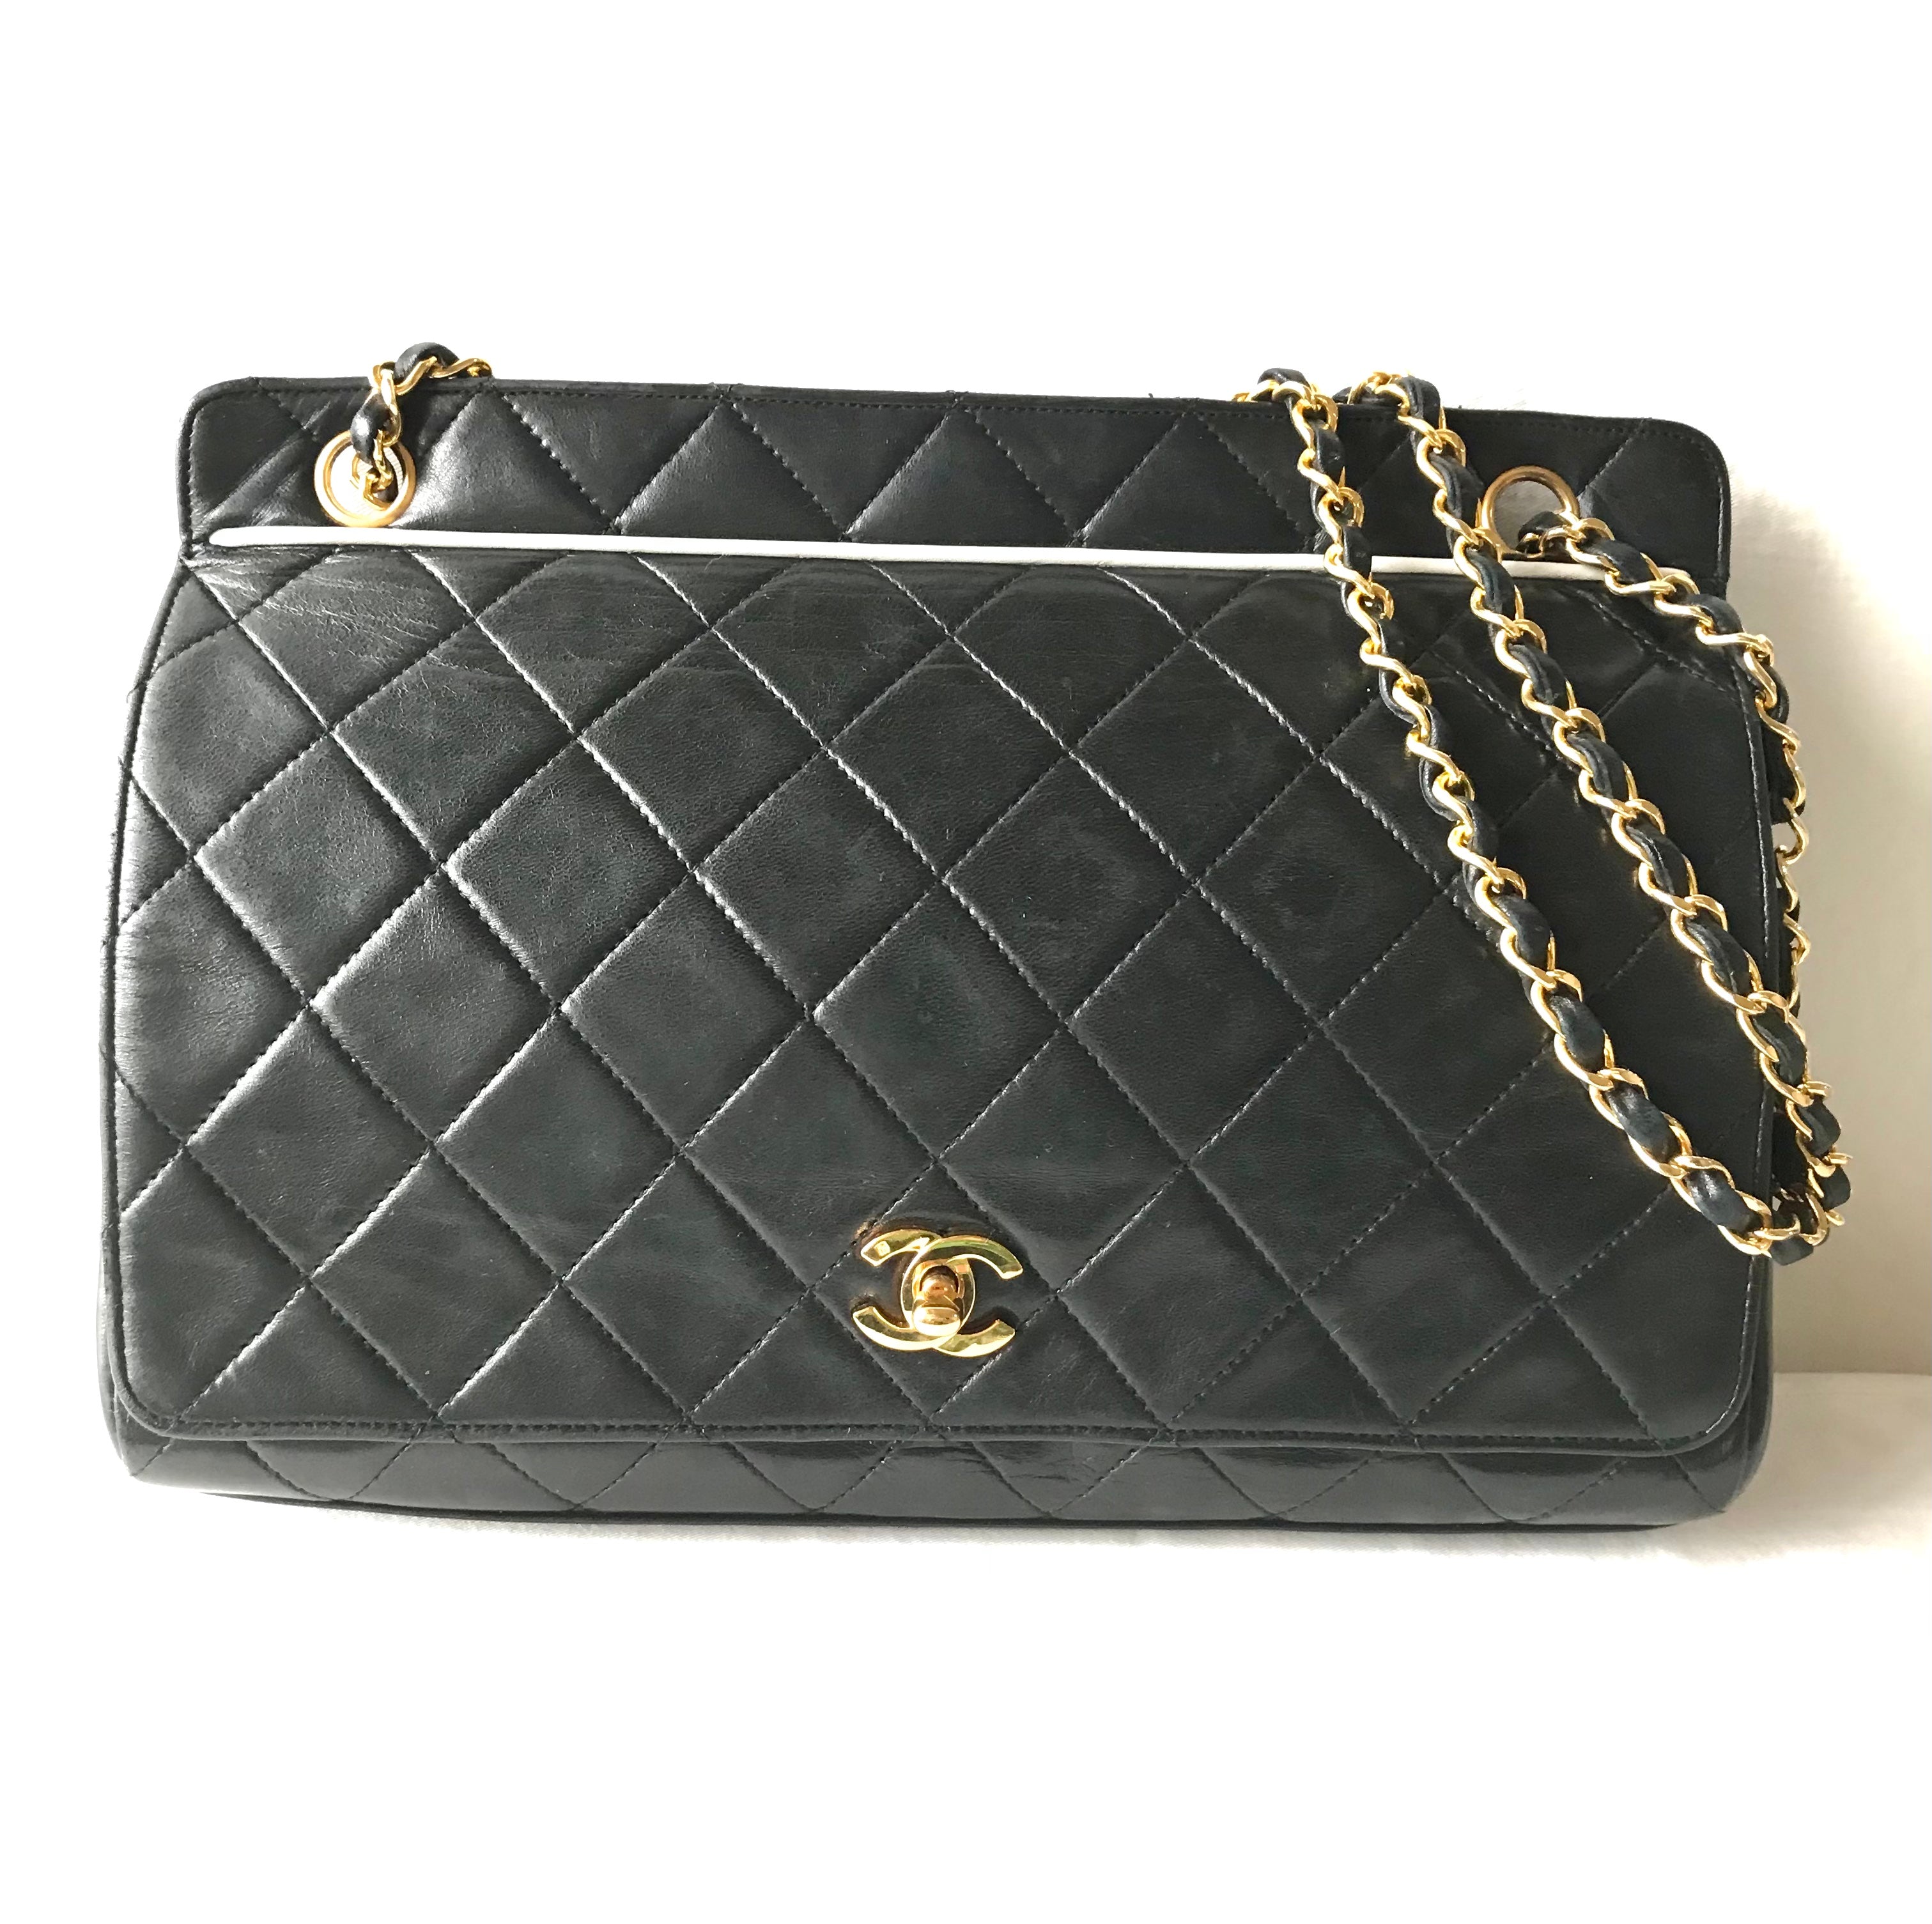 Vintage Chanel black leather 2.55 chain large shoulder bag with